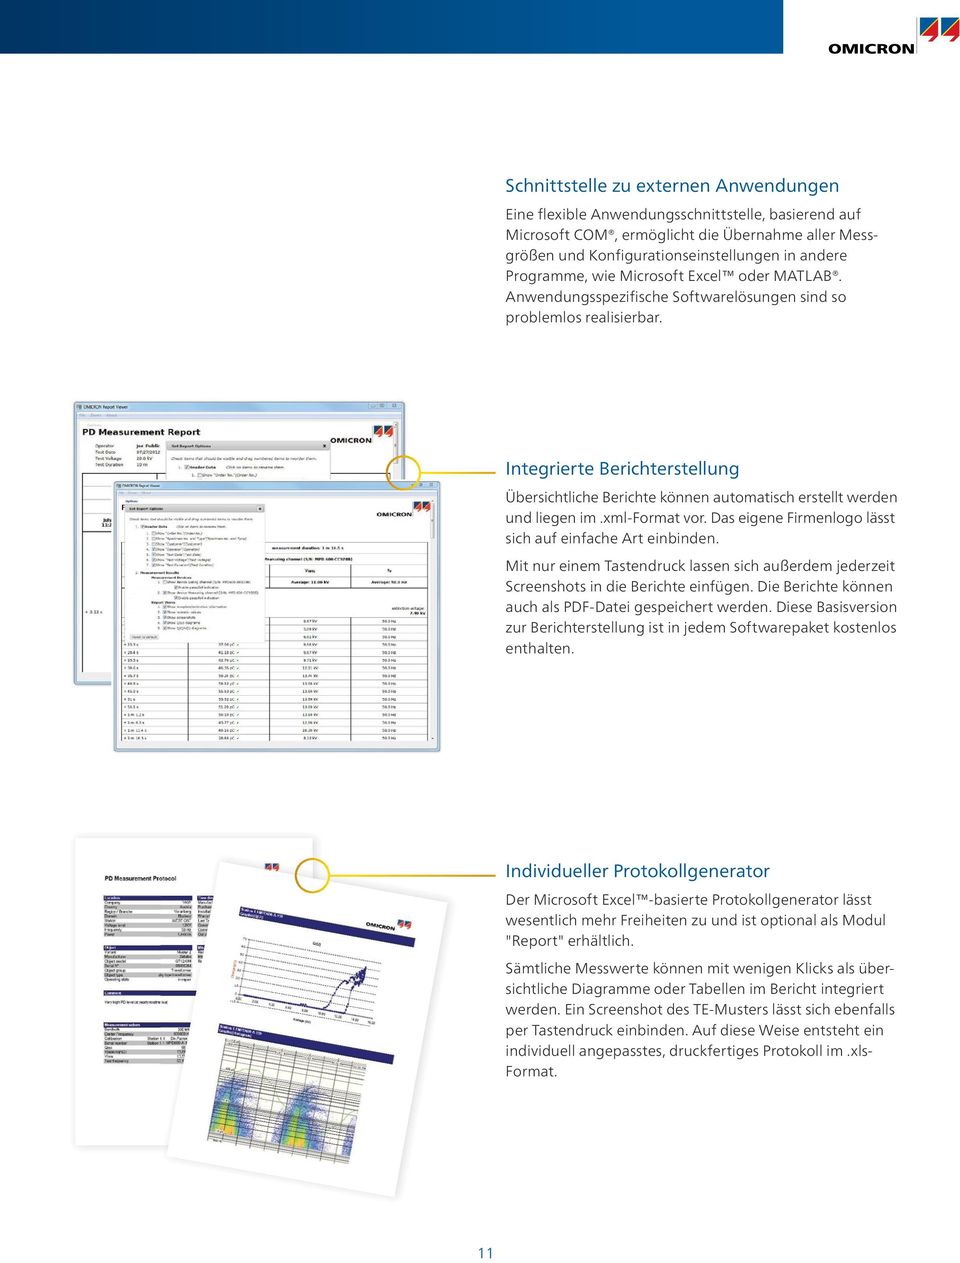 Integrierte Berichterstellung Übersichtliche Berichte können automatisch erstellt werden und liegen im.xml-format vor. Das eigene Firmenlogo lässt sich auf einfache Art einbinden.